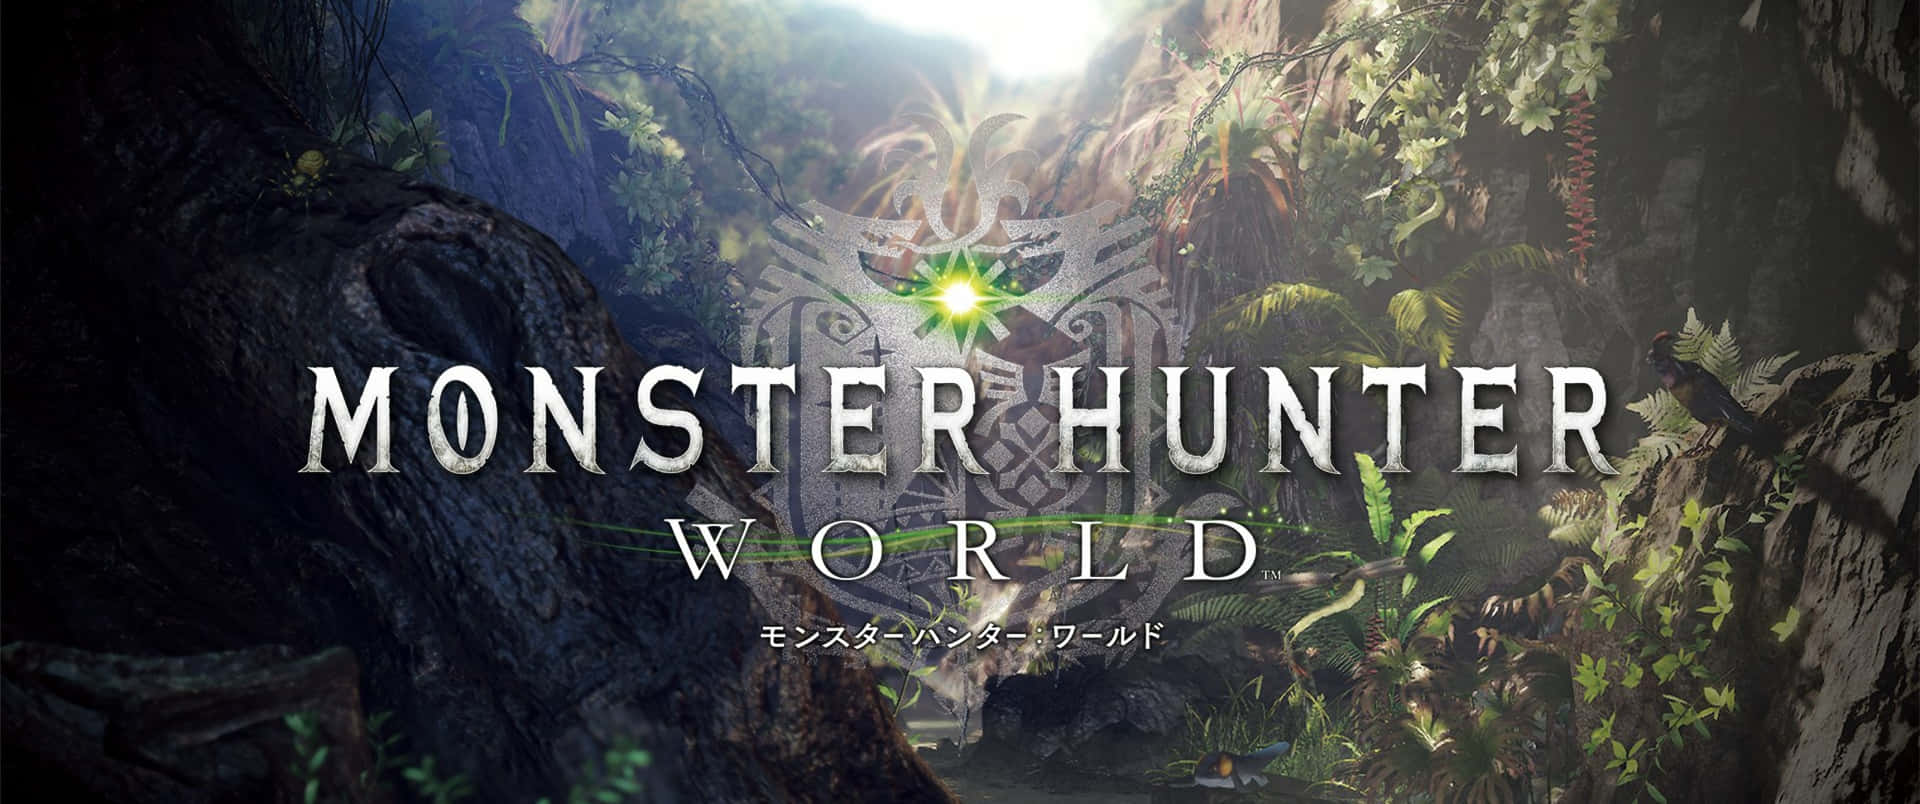 3440x1440p Monster Hunter World Background Wallpaper